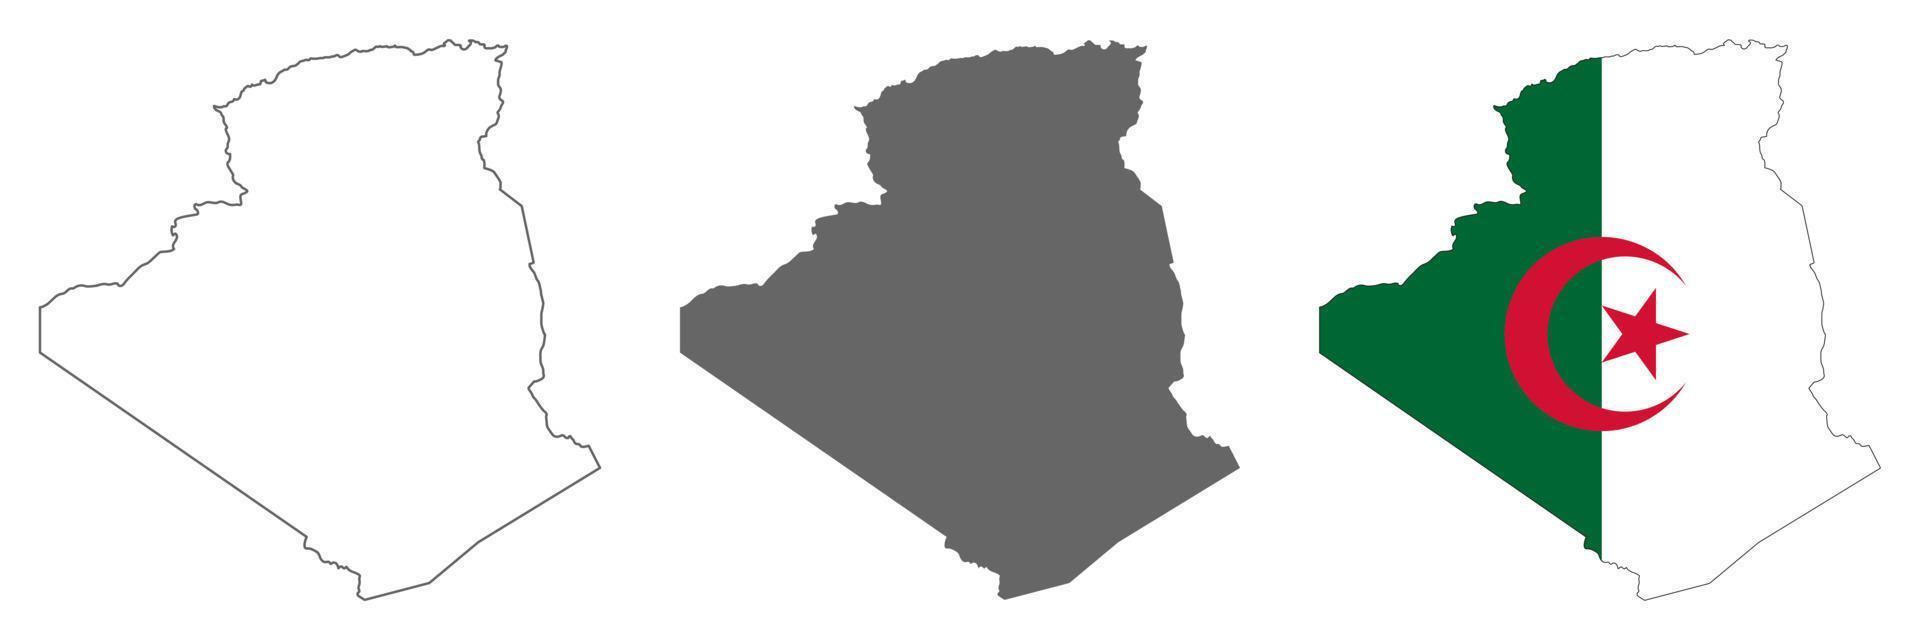 mycket detaljerad karta över Algeriet med gränser isolerade på bakgrunden vektor